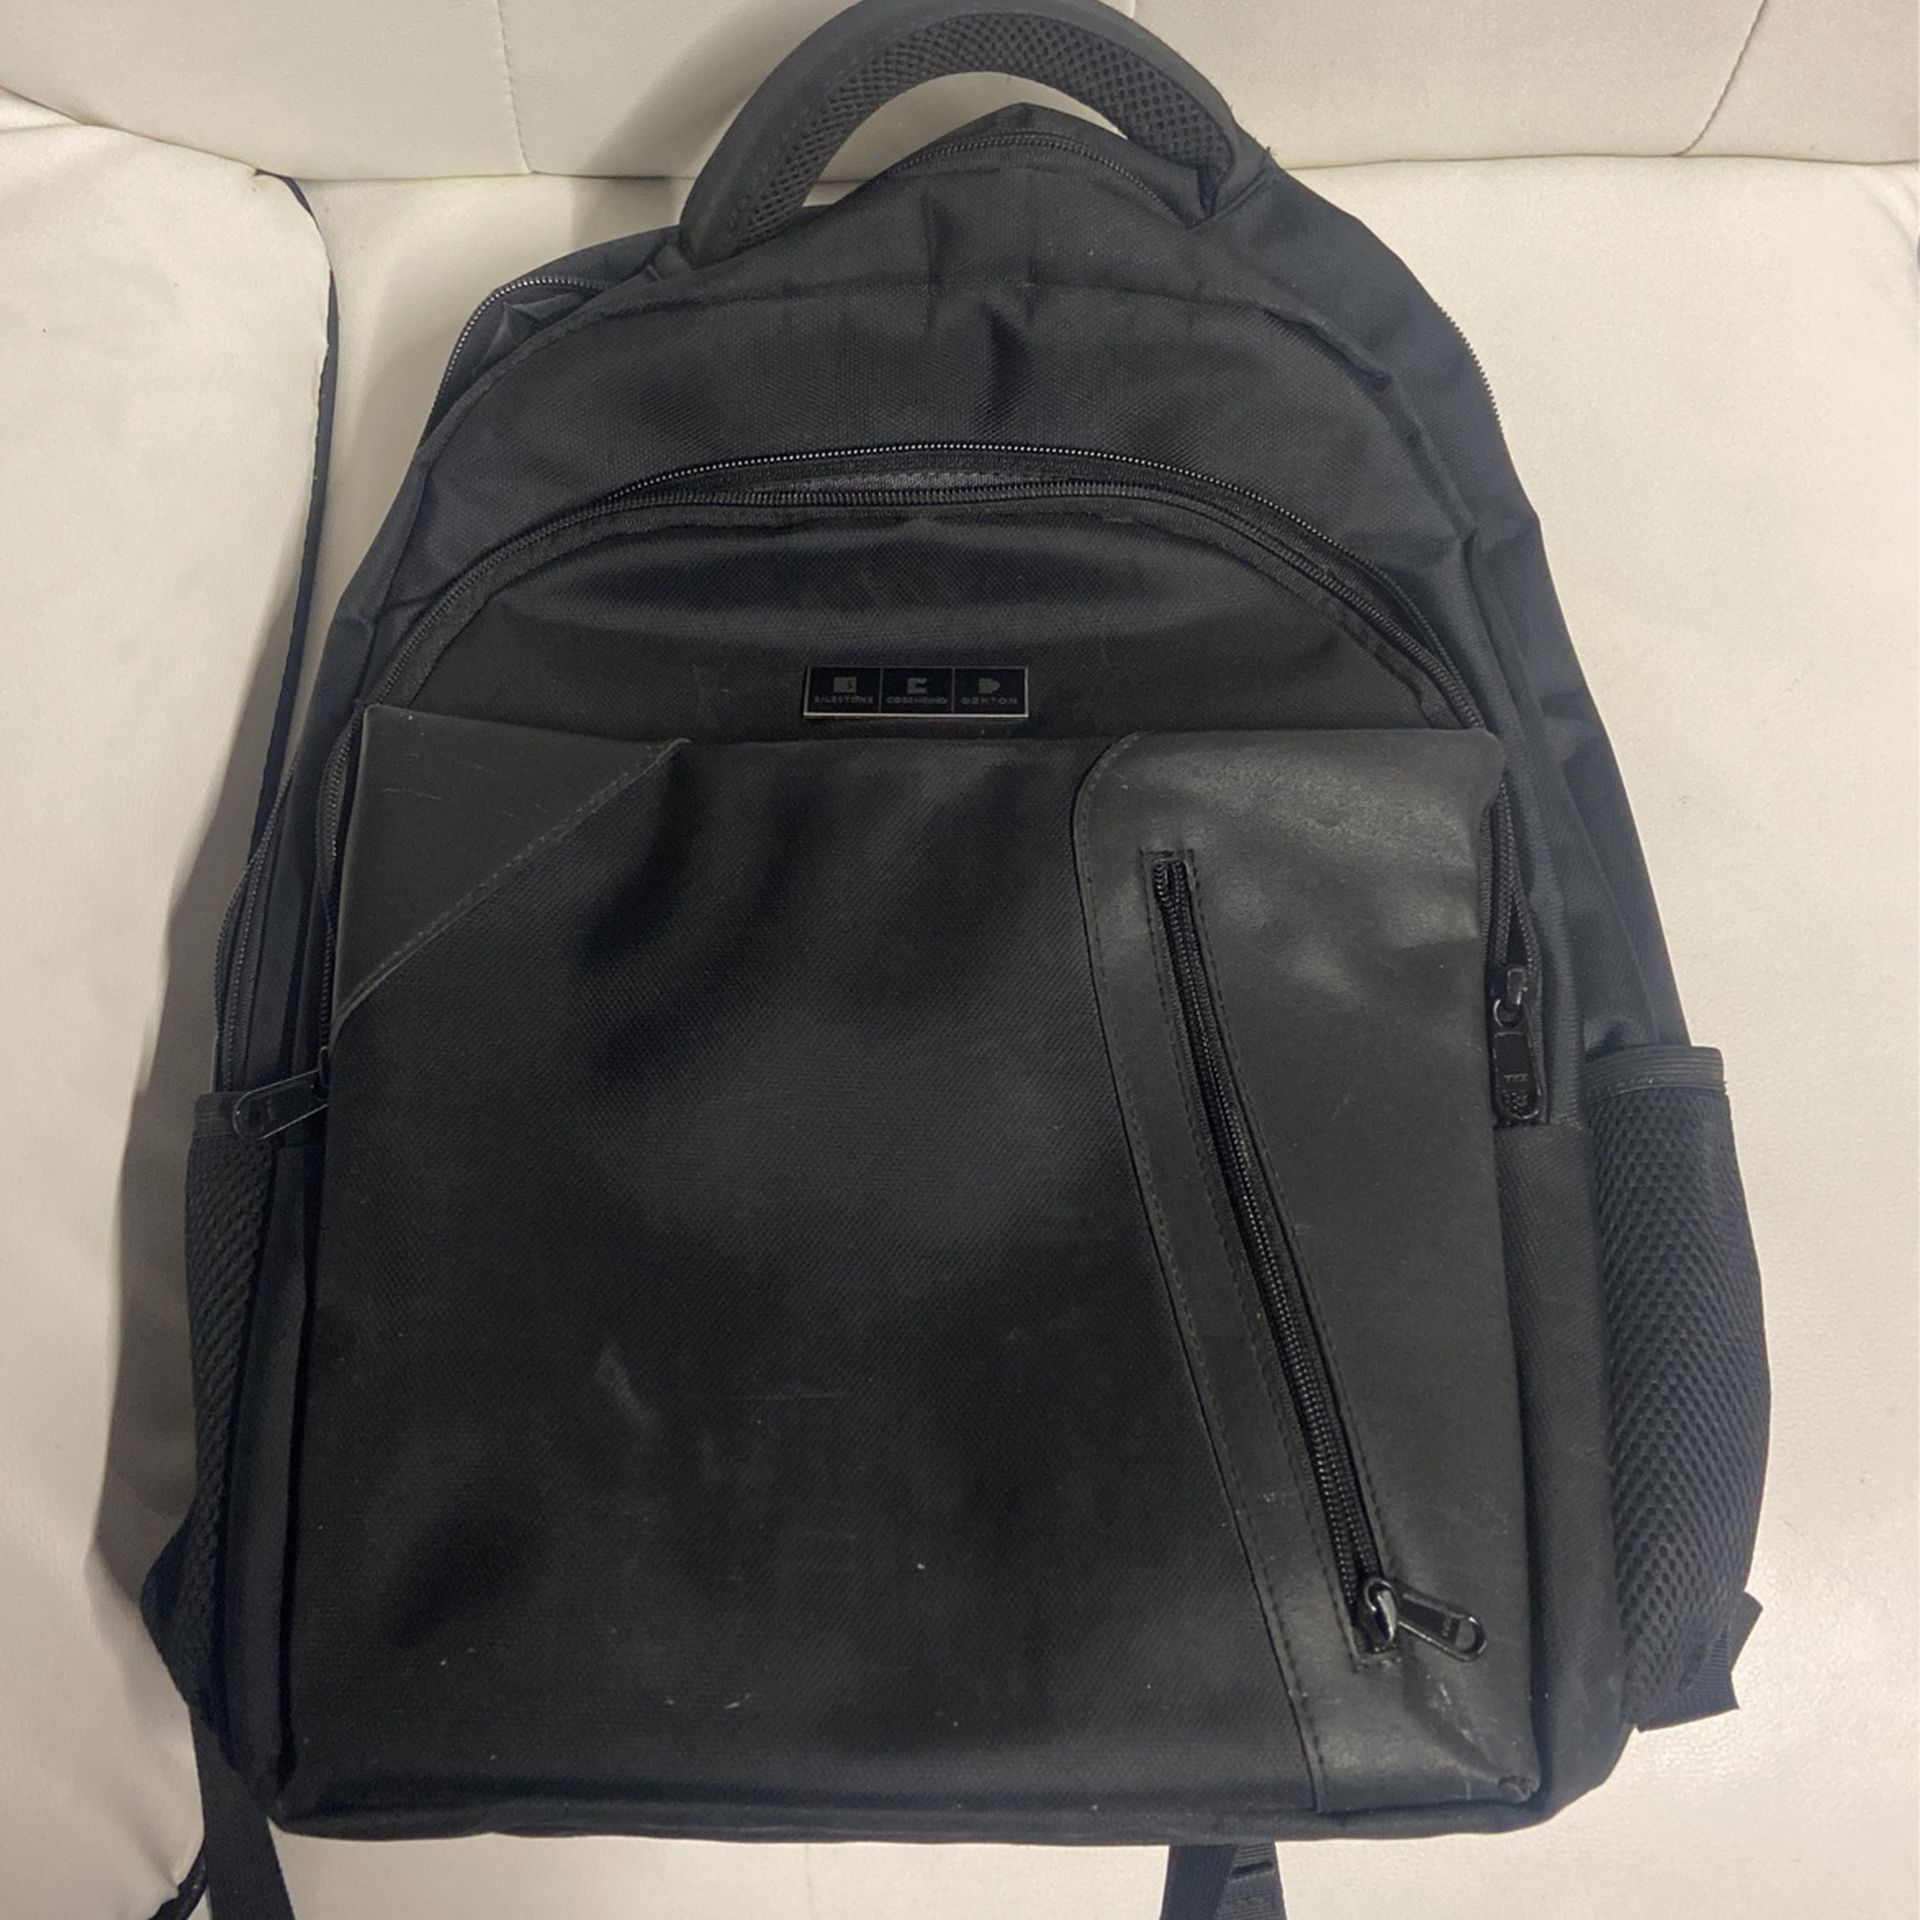 Laptop Bag 